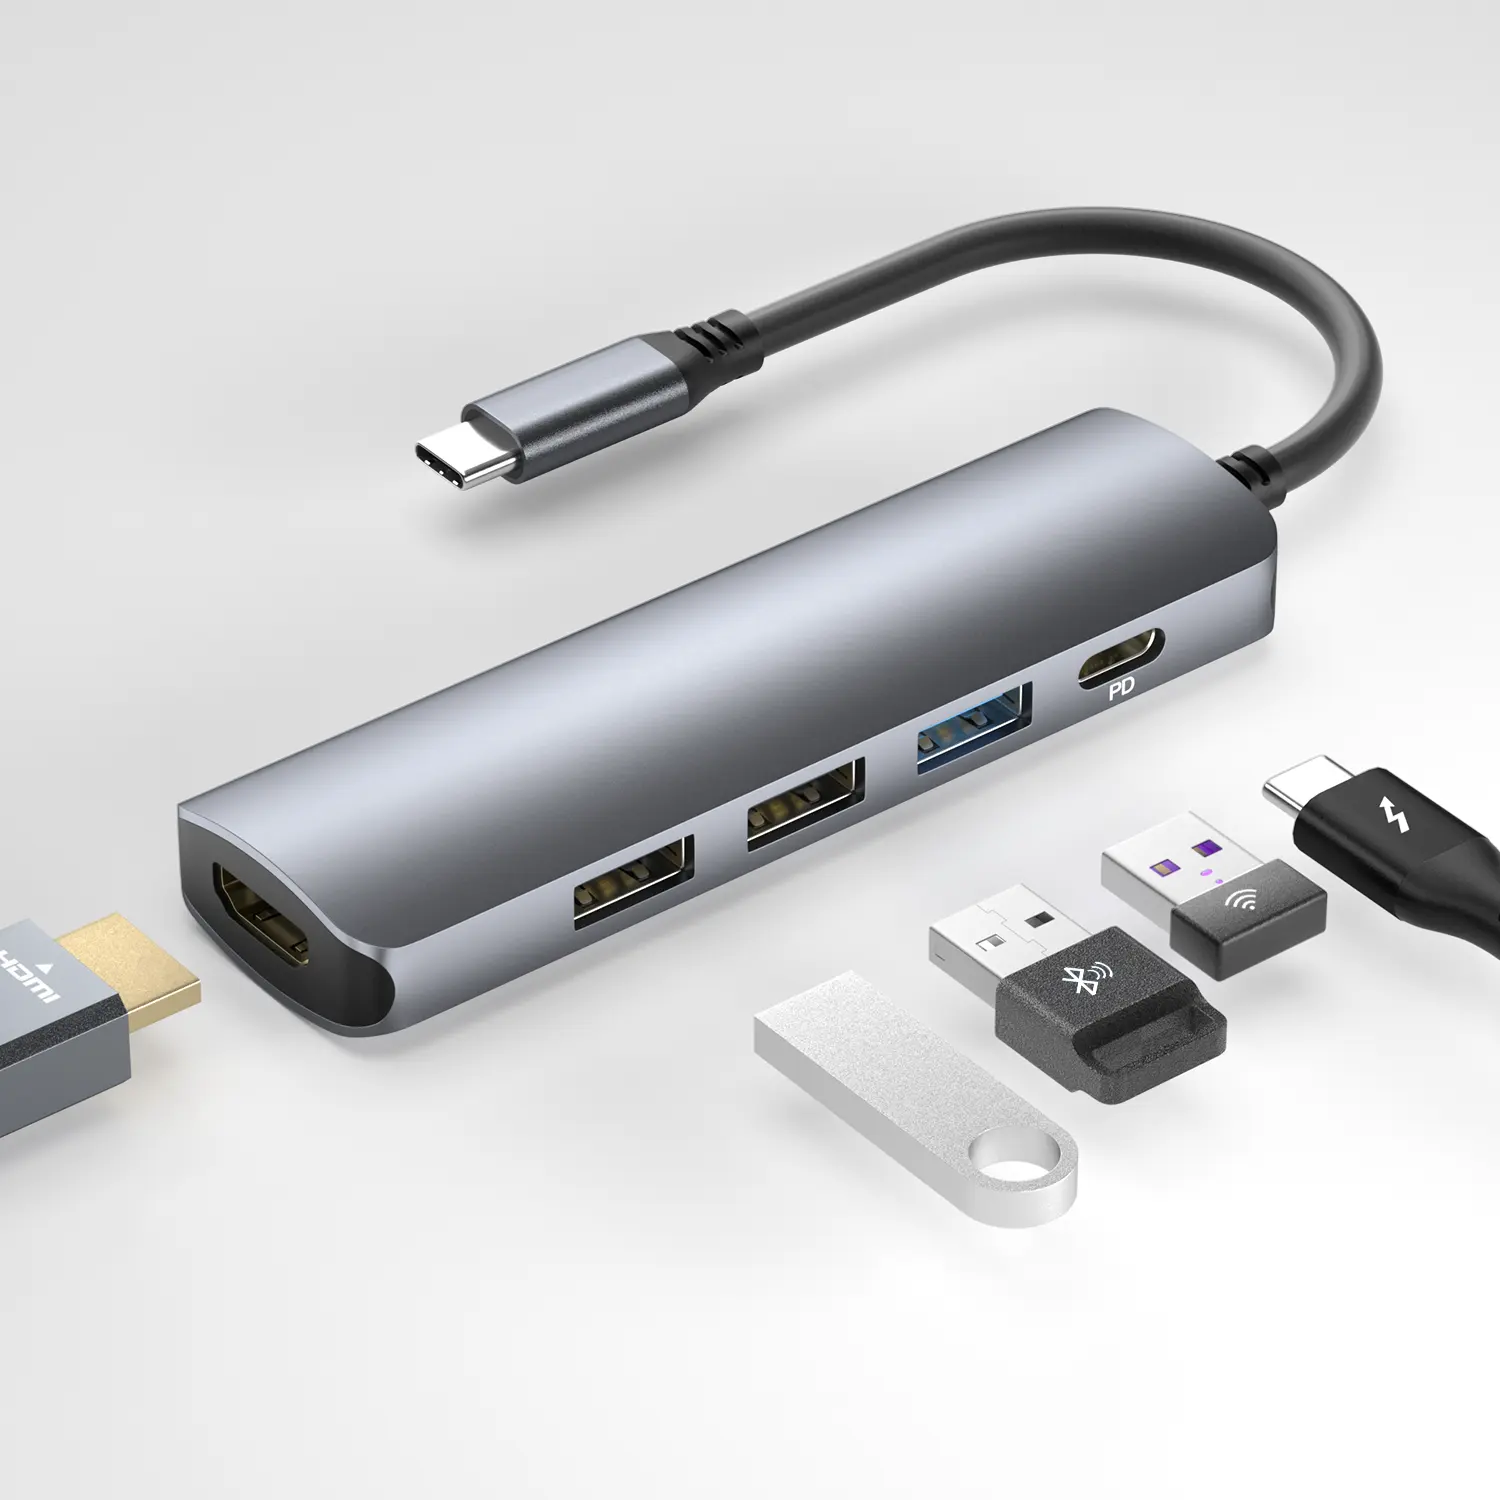 Ult-unite-concentrador de red USB tipo C 5 en 1, Hub con HDMI 4K, 100W, entrega de energía, 5Gbps, USB 3,0, 2 USB 2,0, puertos de datos tipo C